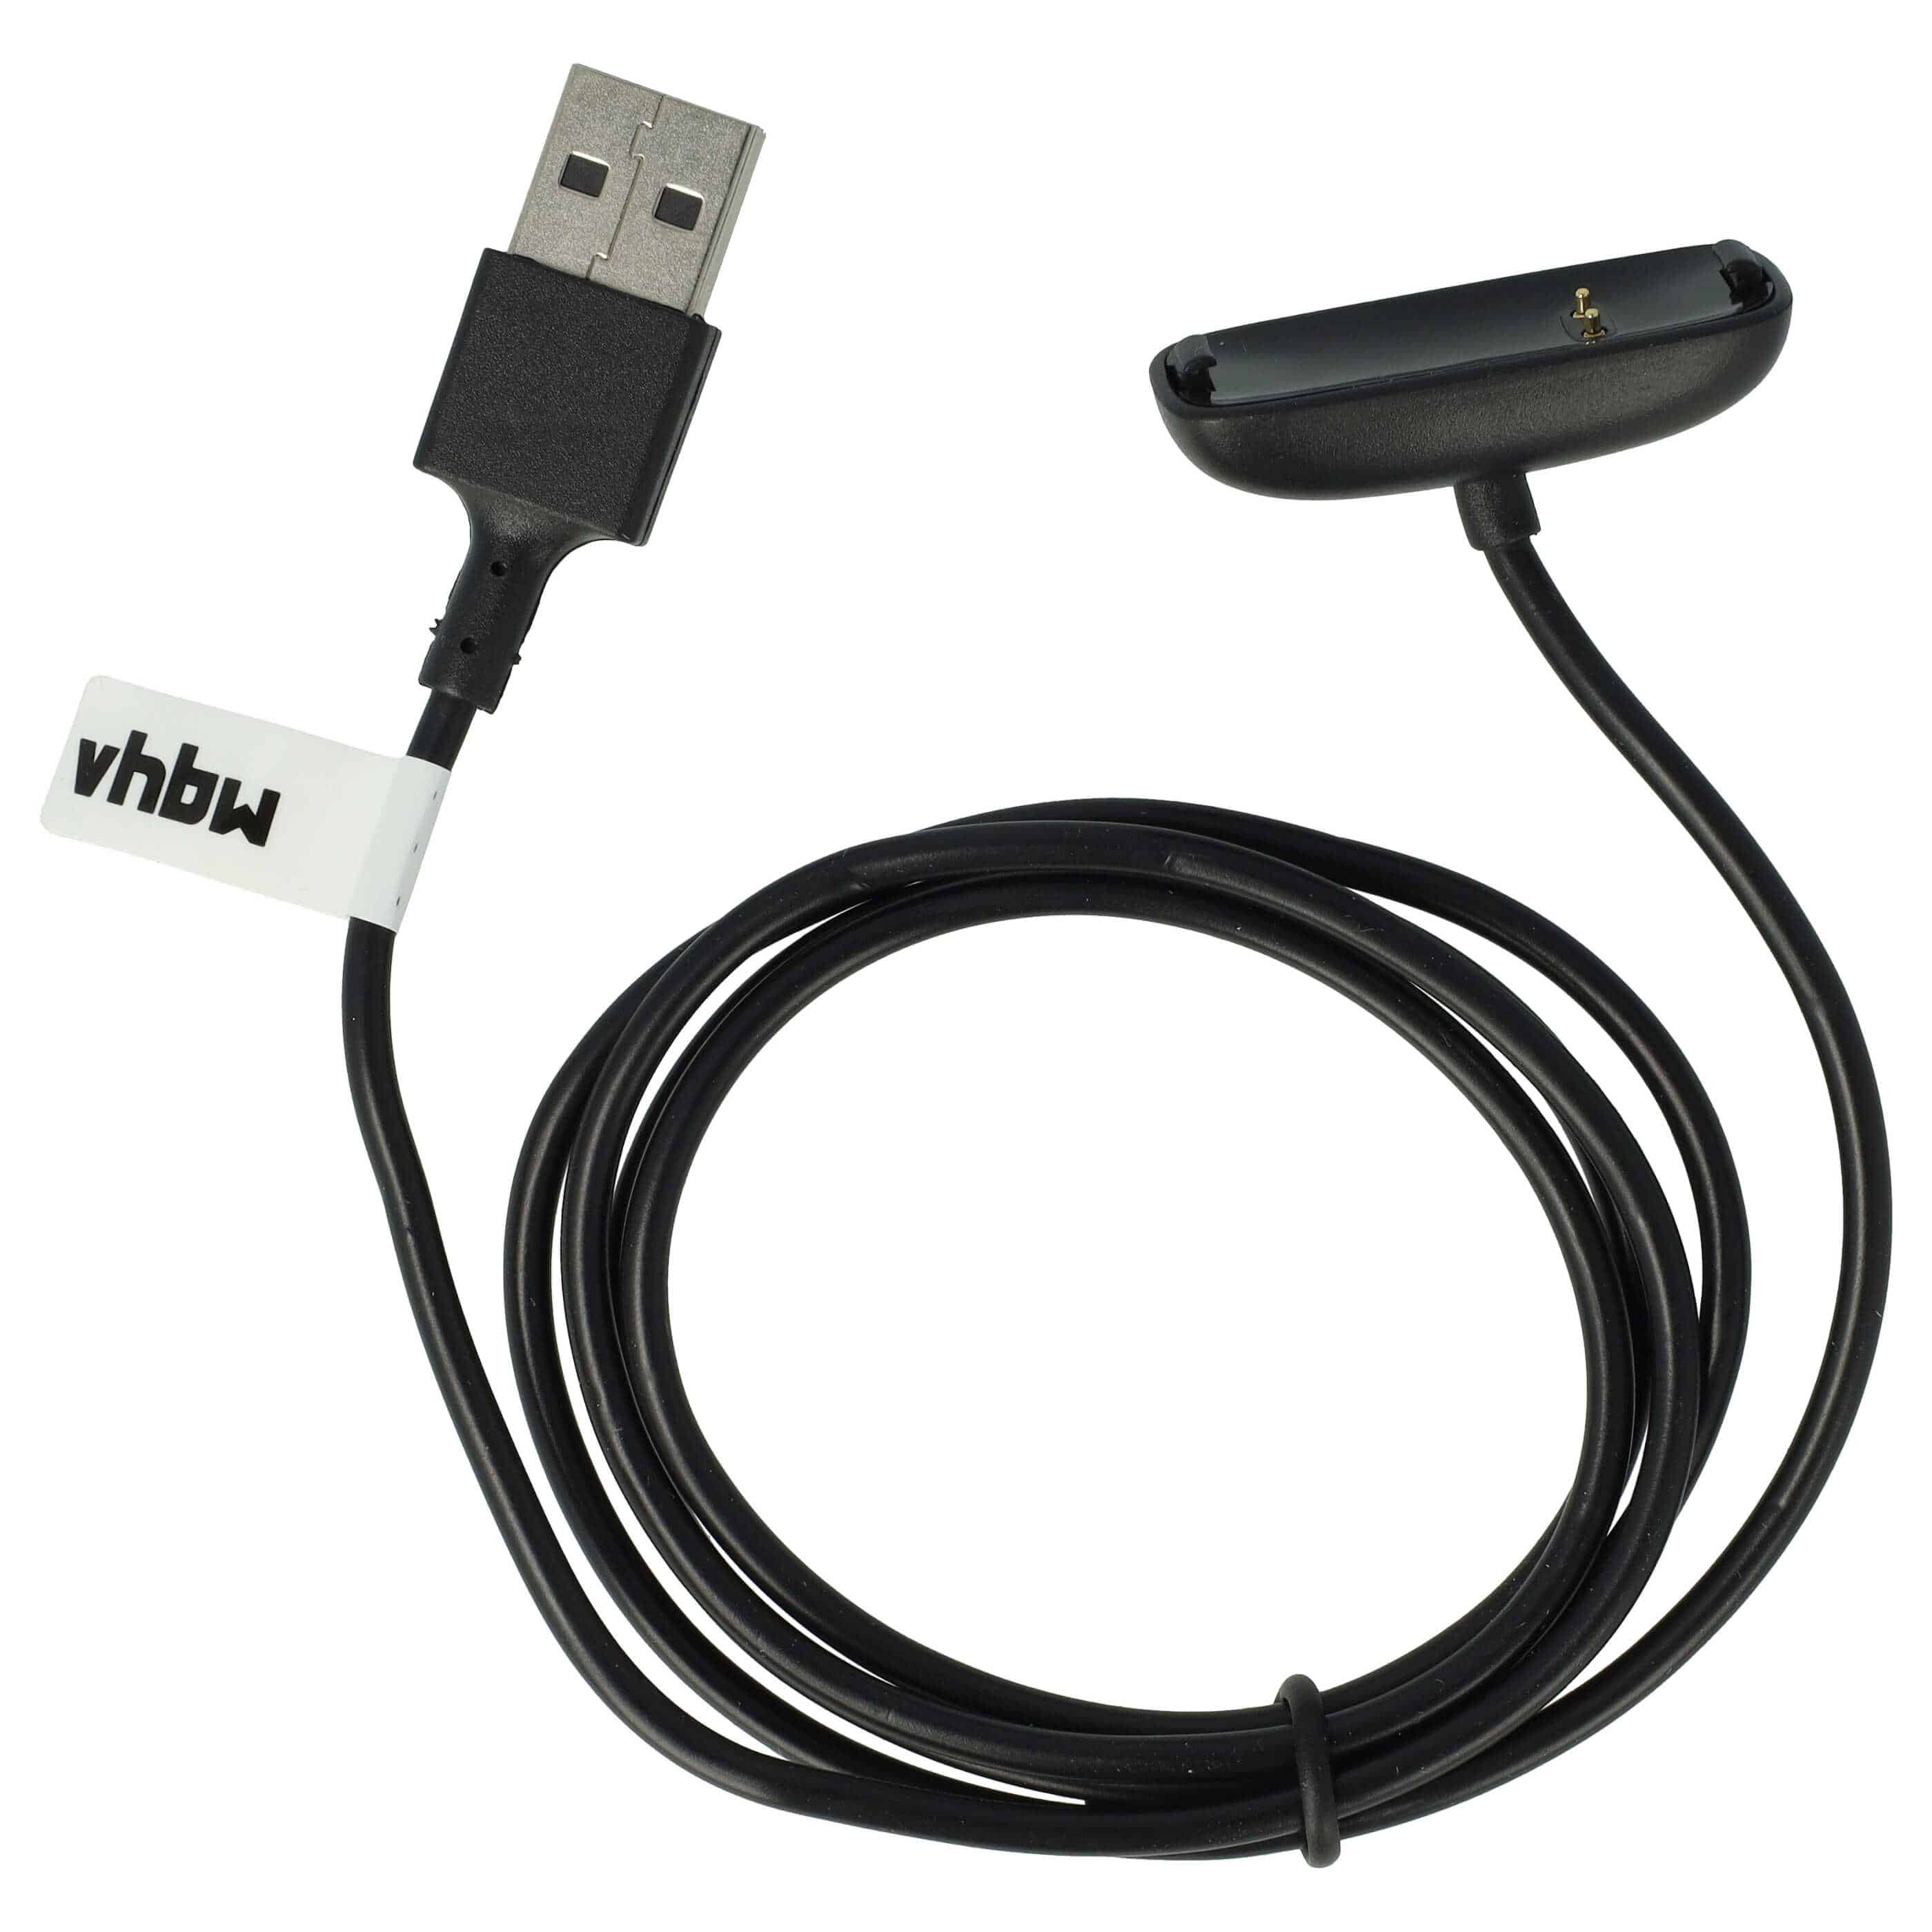 Cable de carga USB para smartwatch Fitbit Ace - negro 100 cm